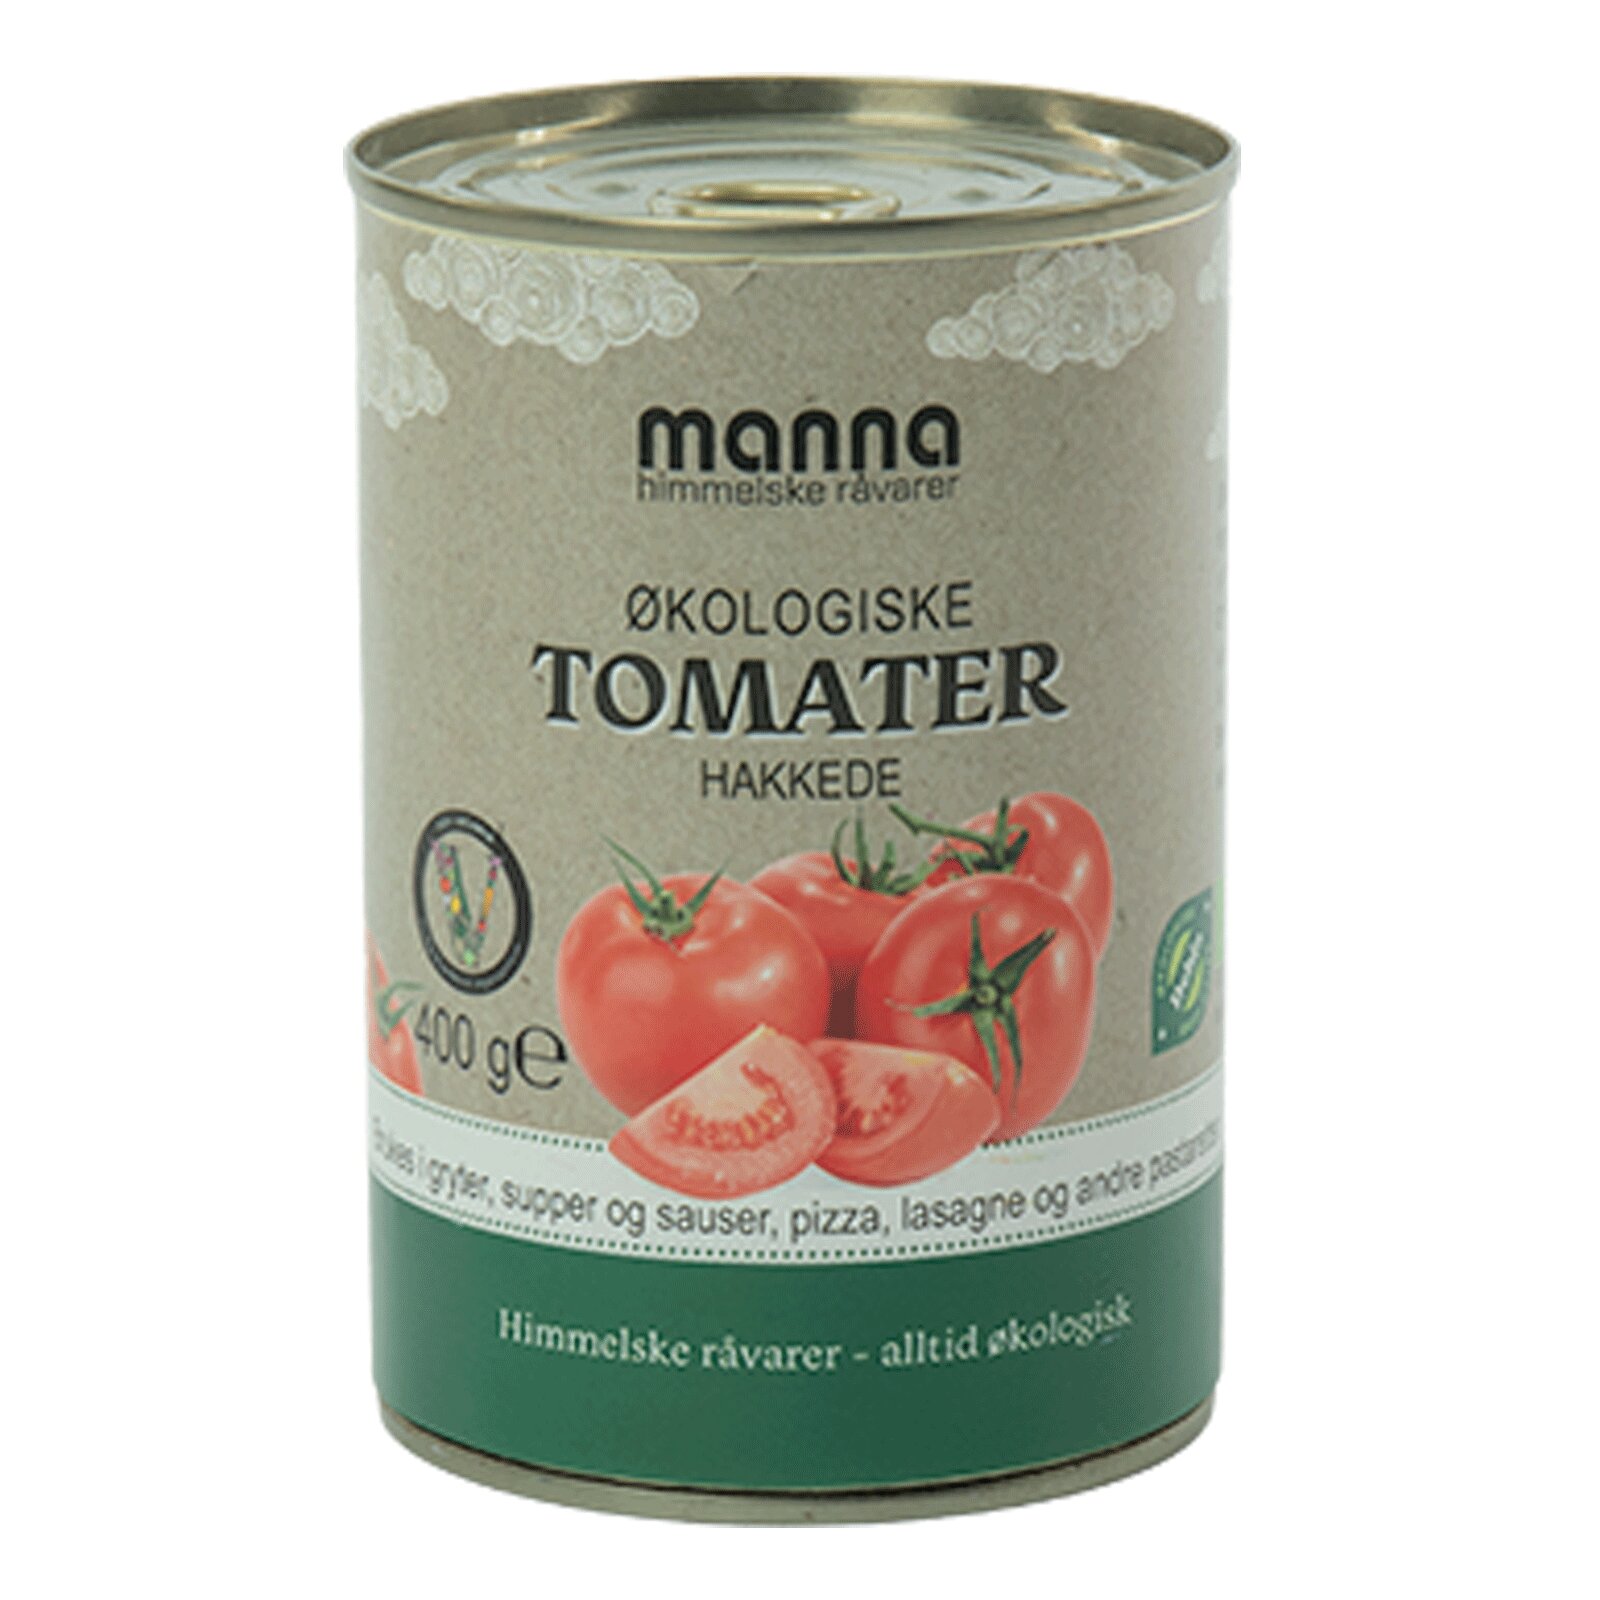 Manna Tomater Hakket Hermetisk 400G Økologisk